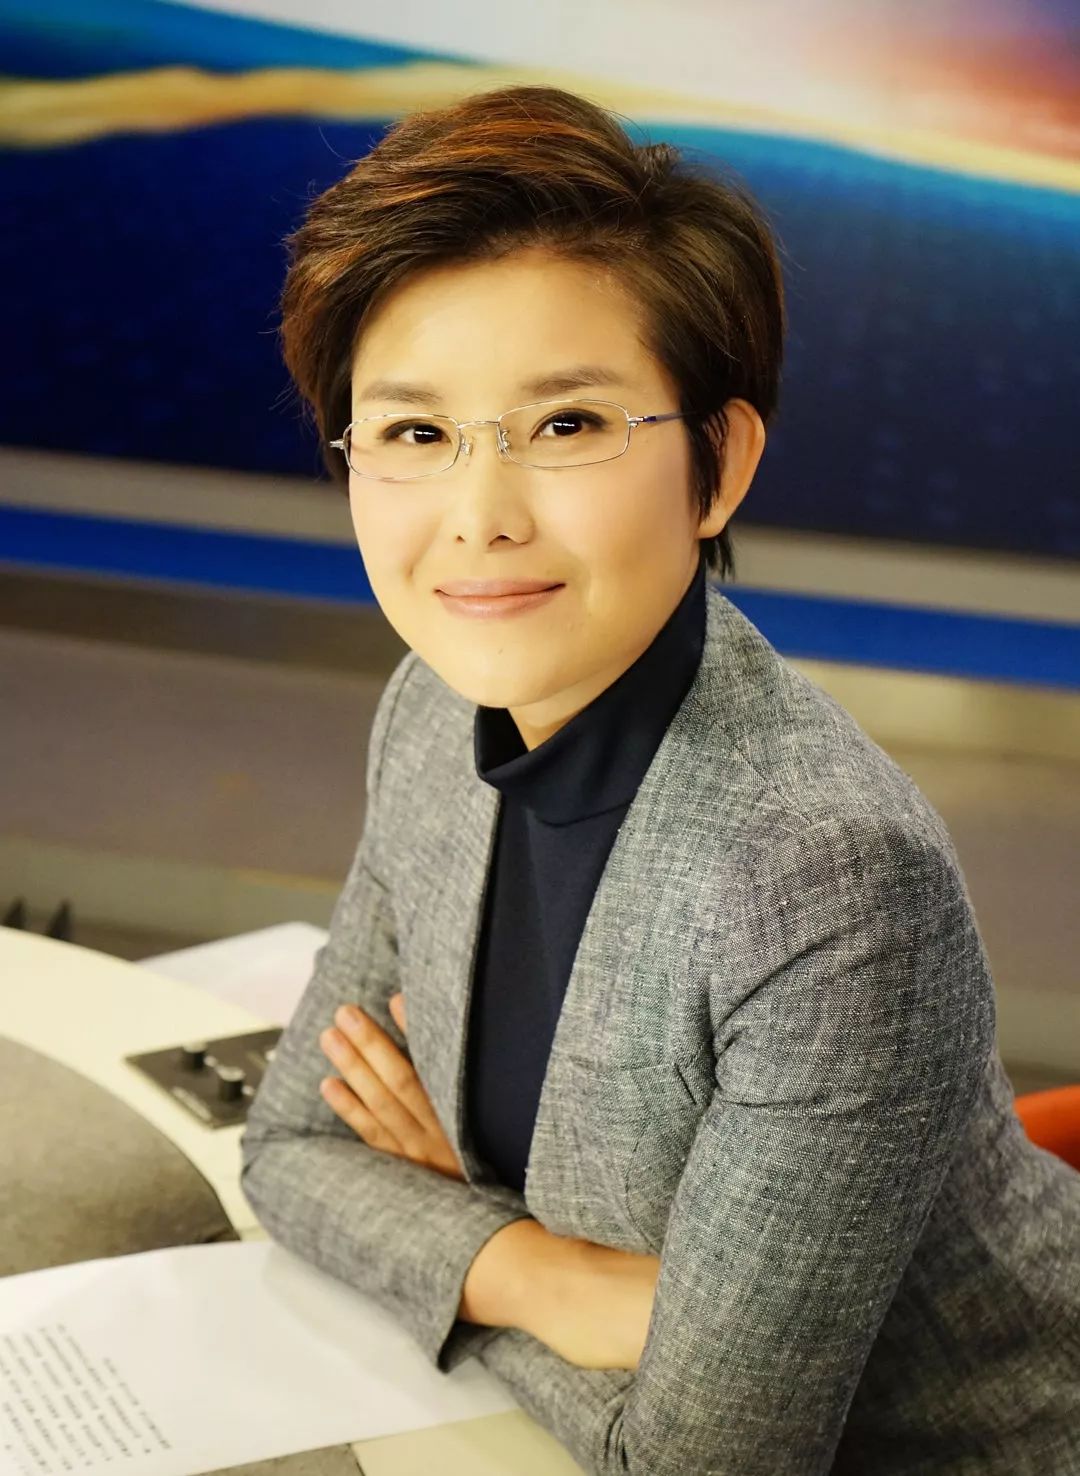 多了一份可爱呢~ 其实我们中国在节目中戴眼镜的新闻女主播,女主持也